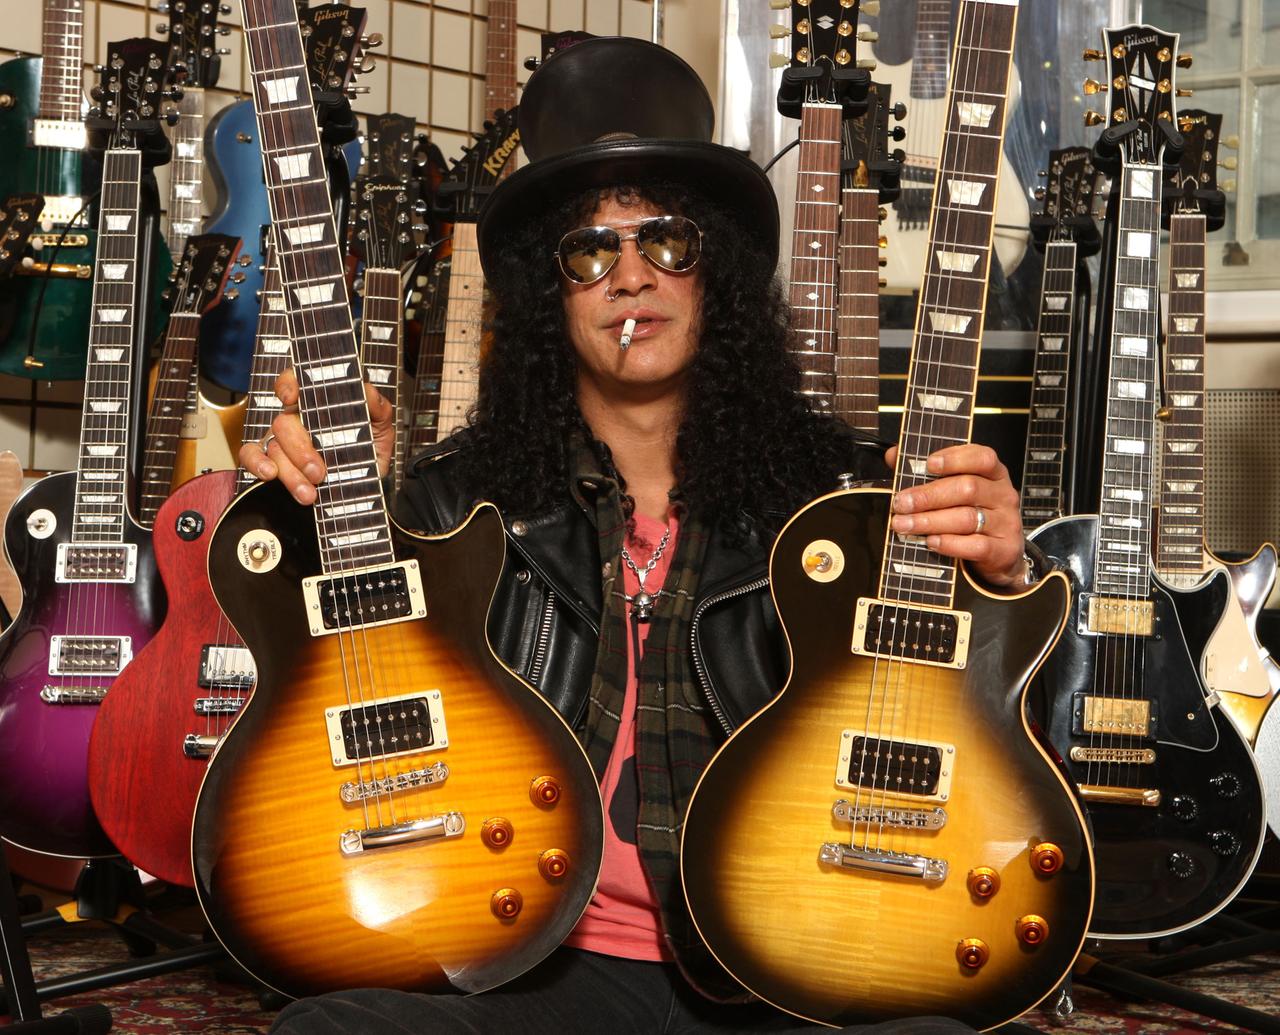 Der amerikanische Musiker Slash posiert mit zwei Gibson Gitarren. Er trägt einen schwarzen Zylinder, eine dunkle Sonnenbrille, hat schwarze lockige Haar und eine Zigarette im Mund.